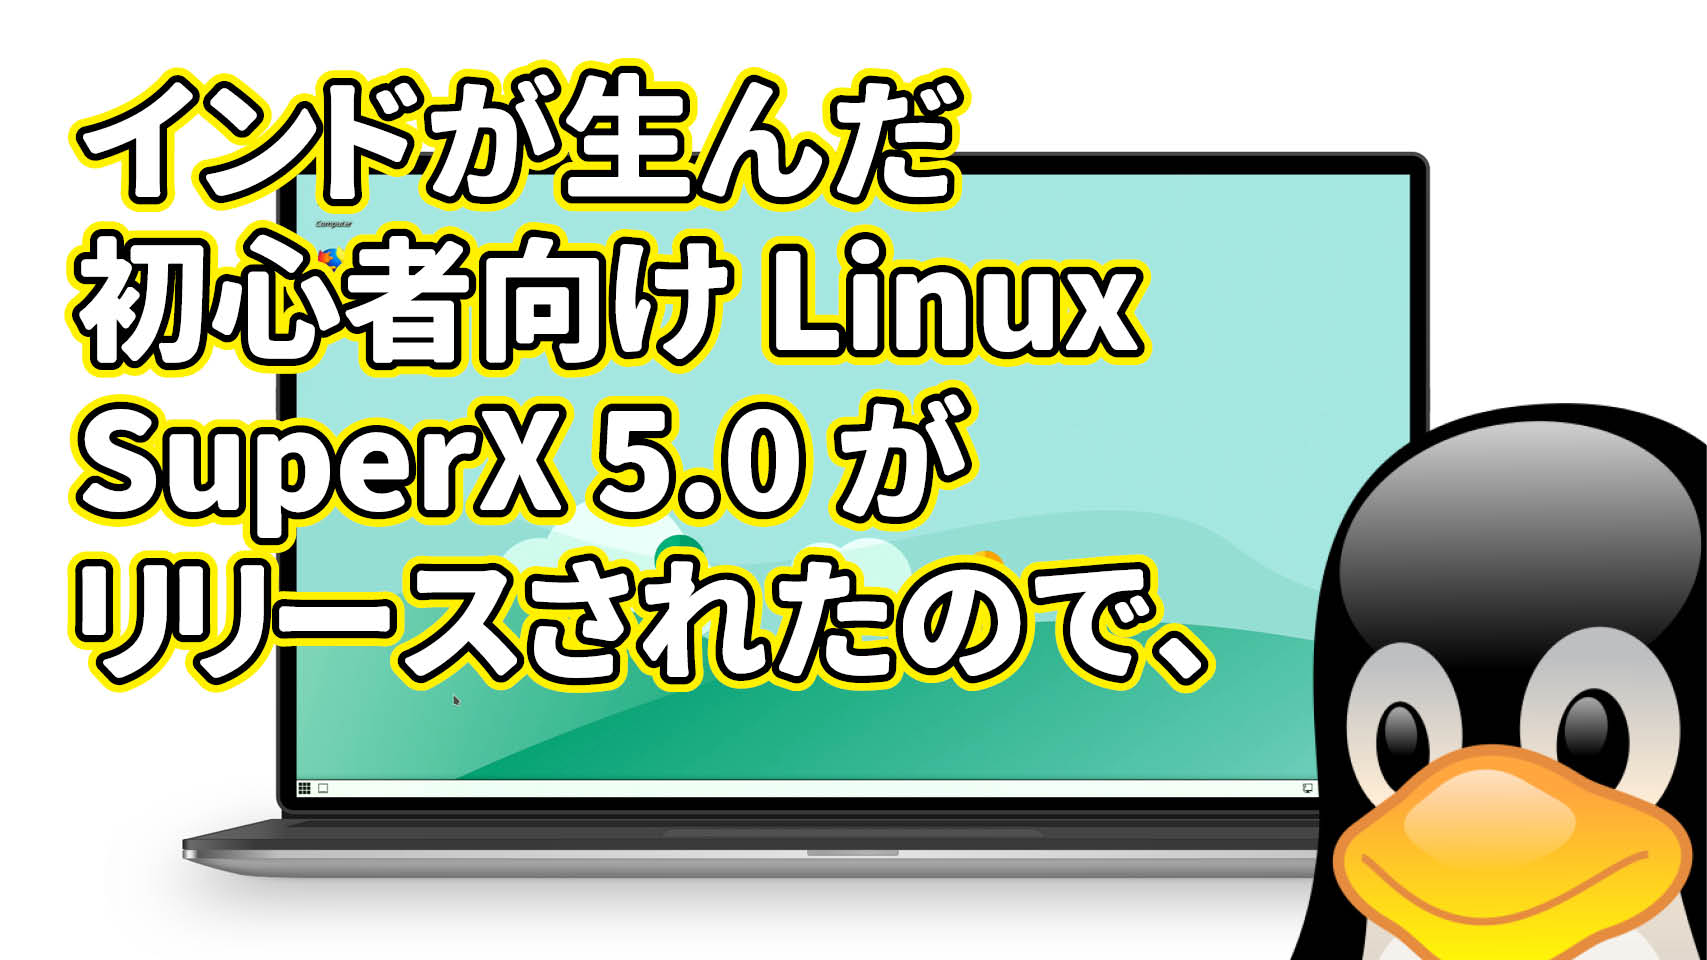 インドが生んだ初心者向け Linux SuperX 5.0 がリリースされたので、